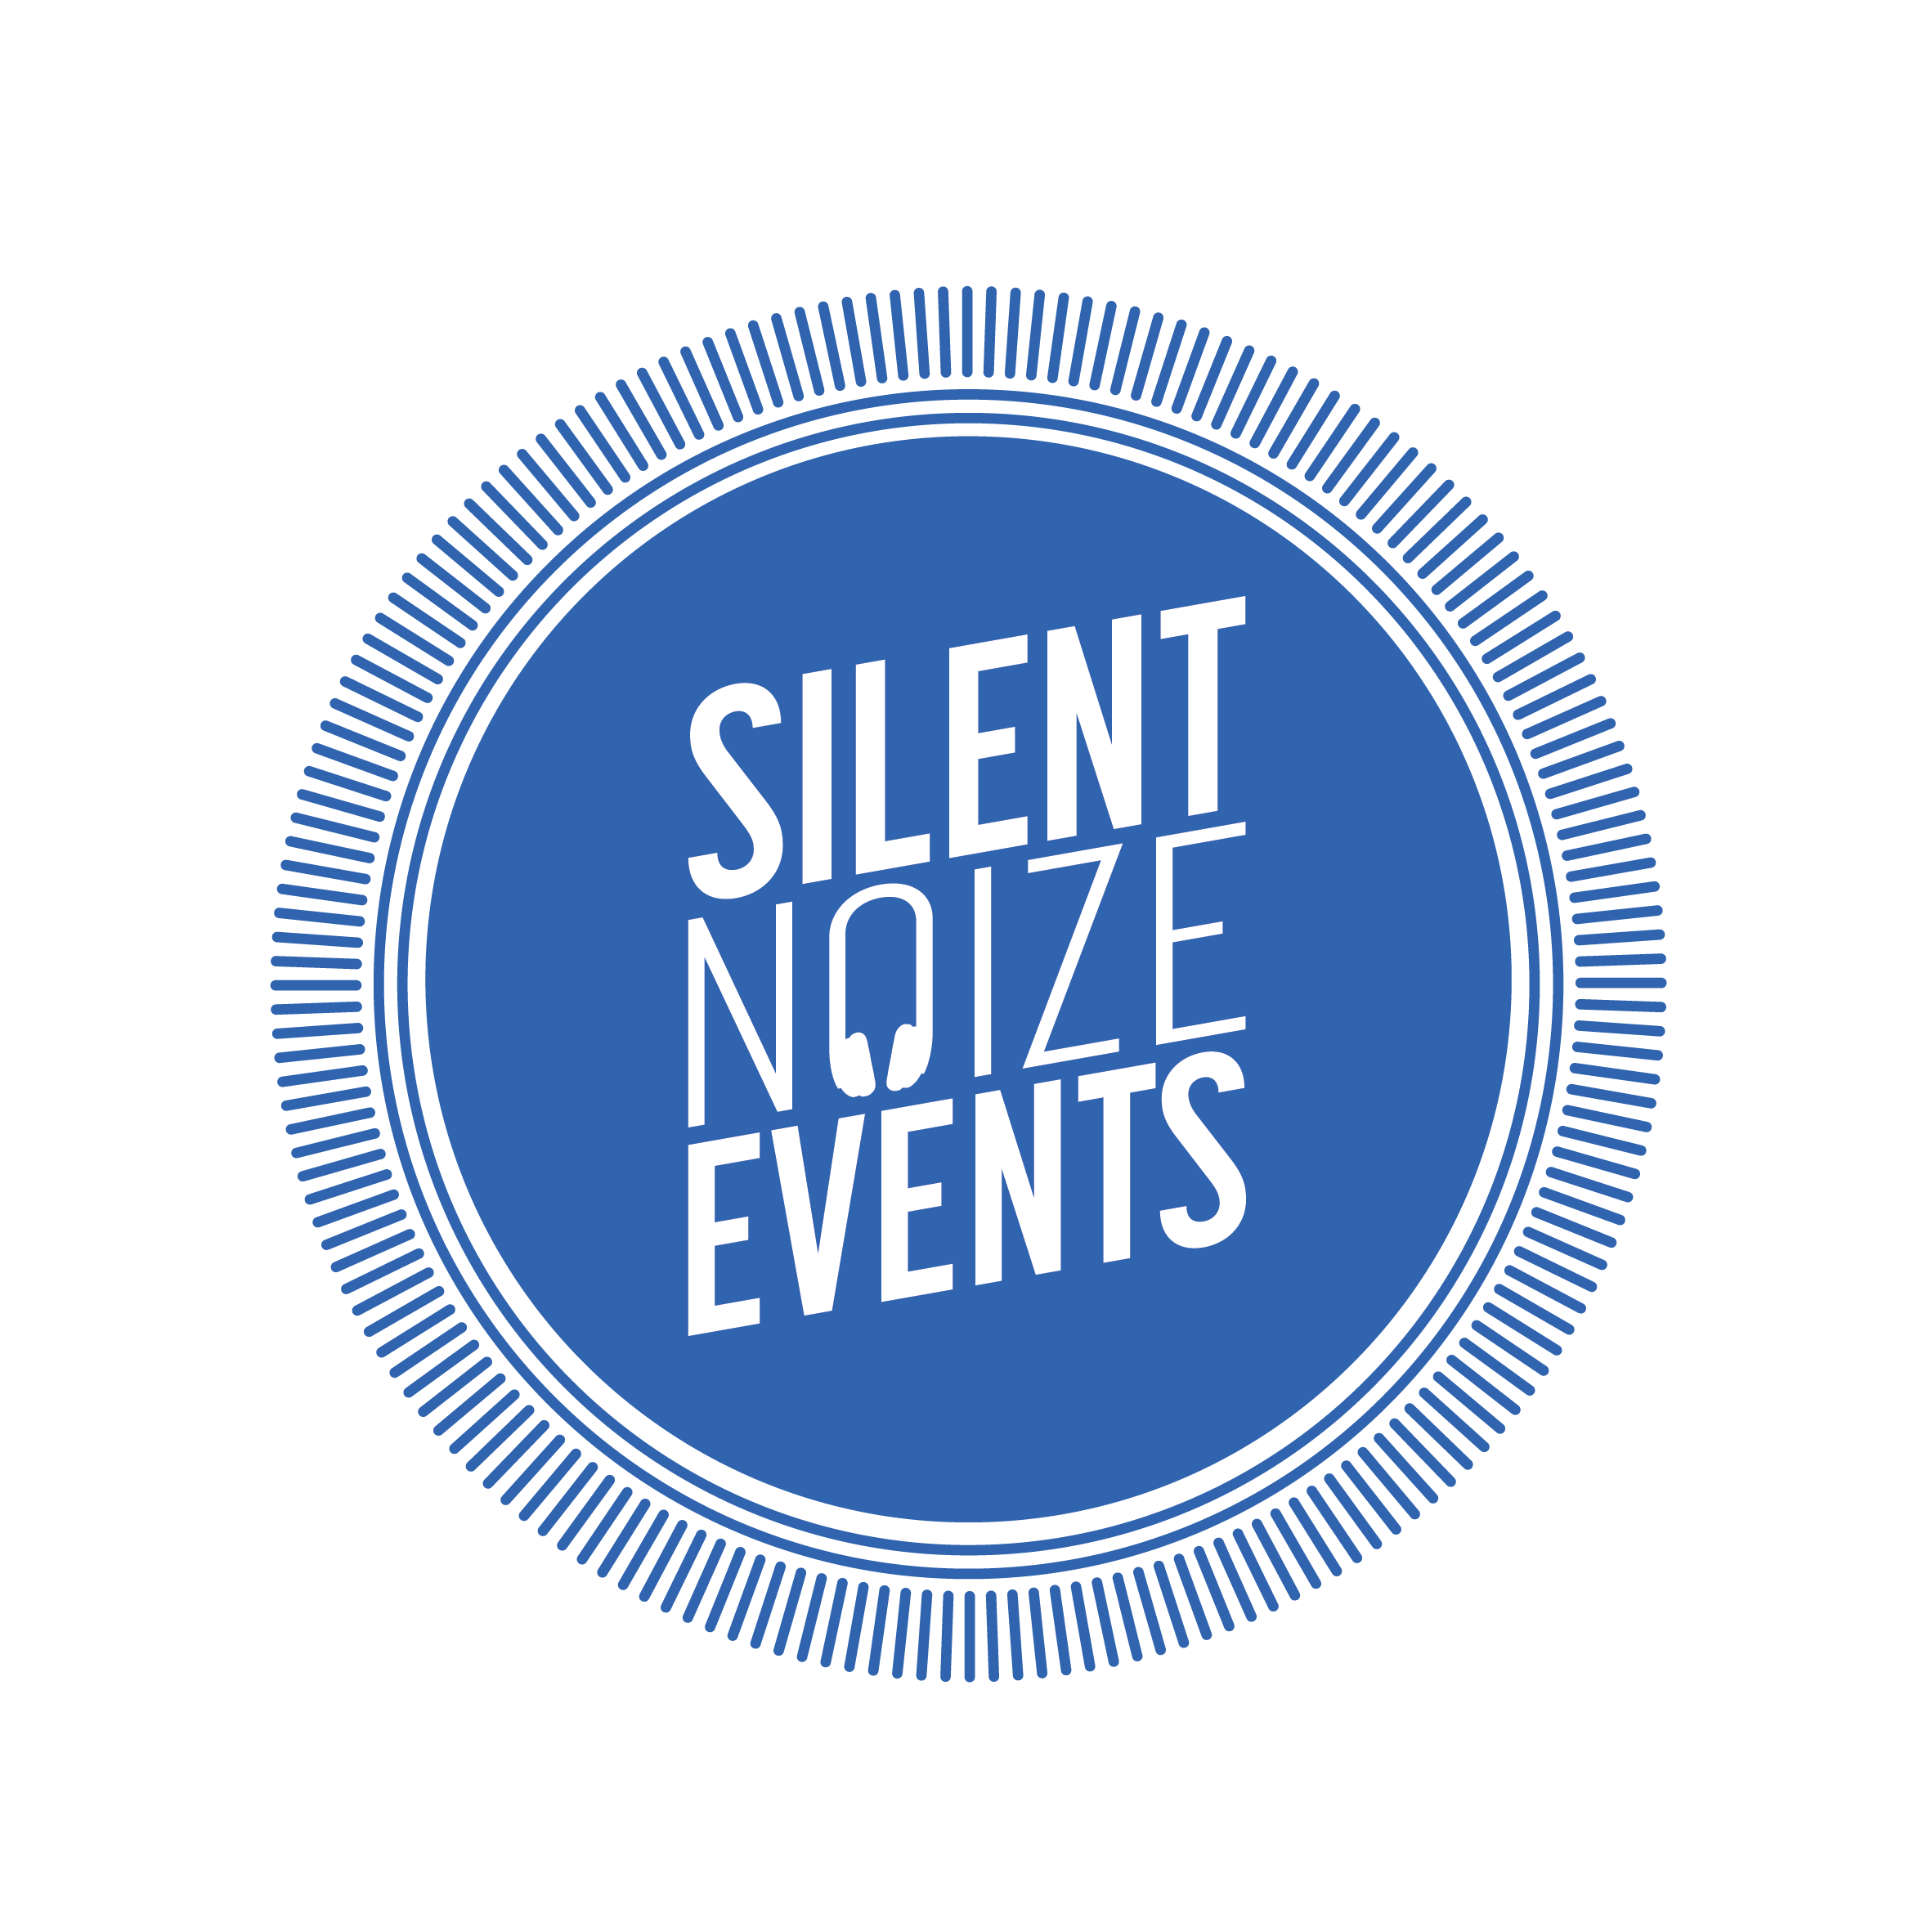 Silent Noize Events Ltd